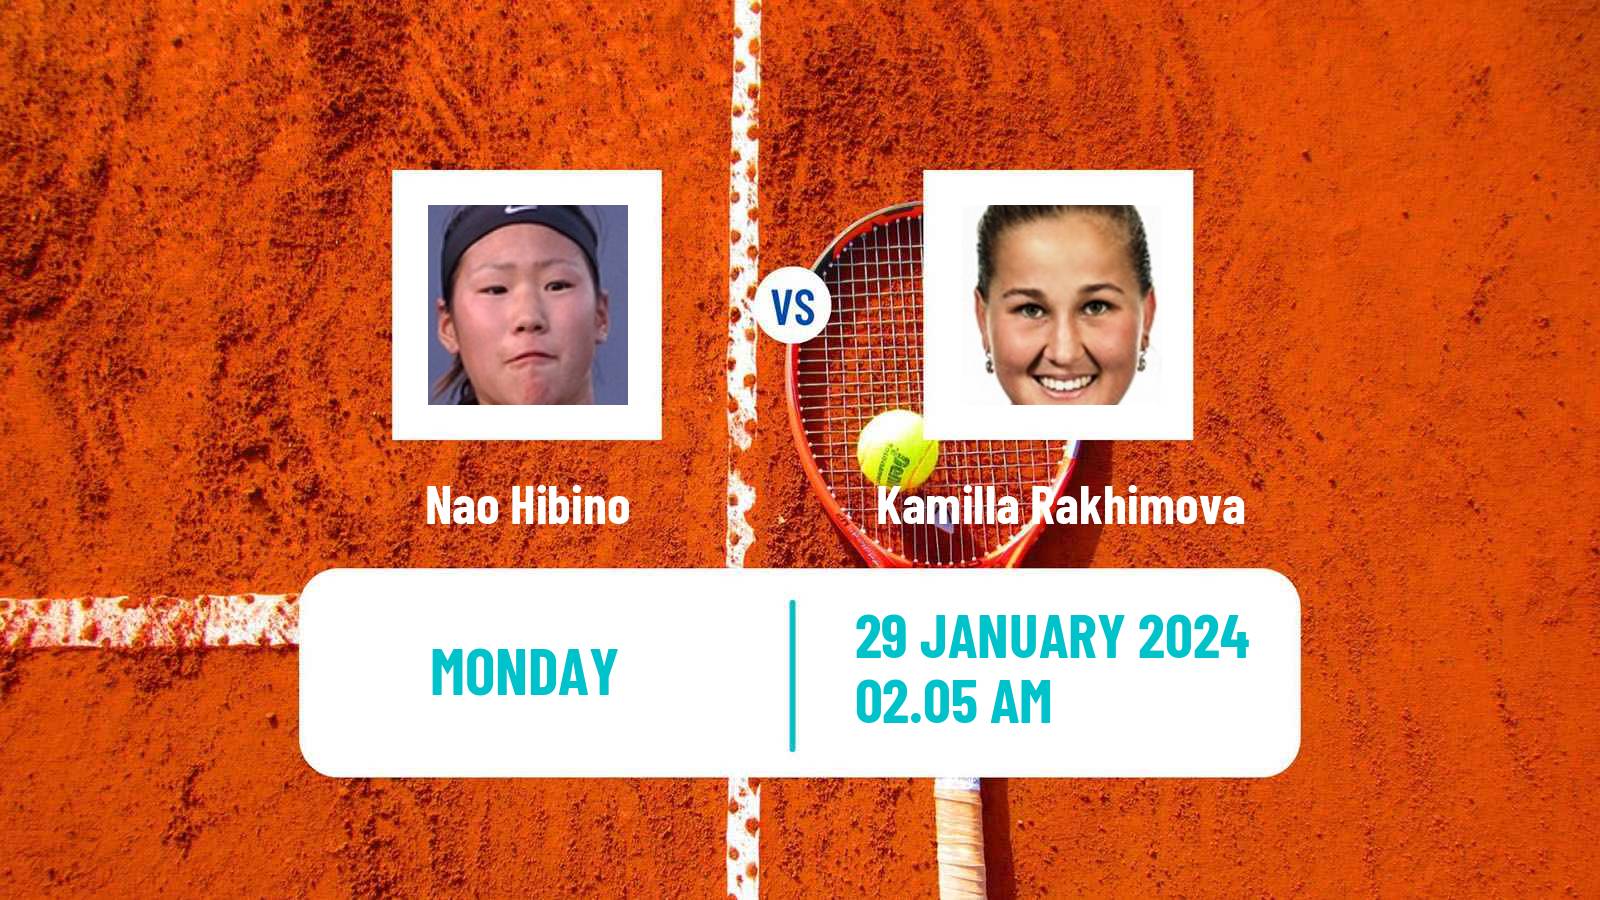 Tennis WTA Hua Hin Nao Hibino - Kamilla Rakhimova